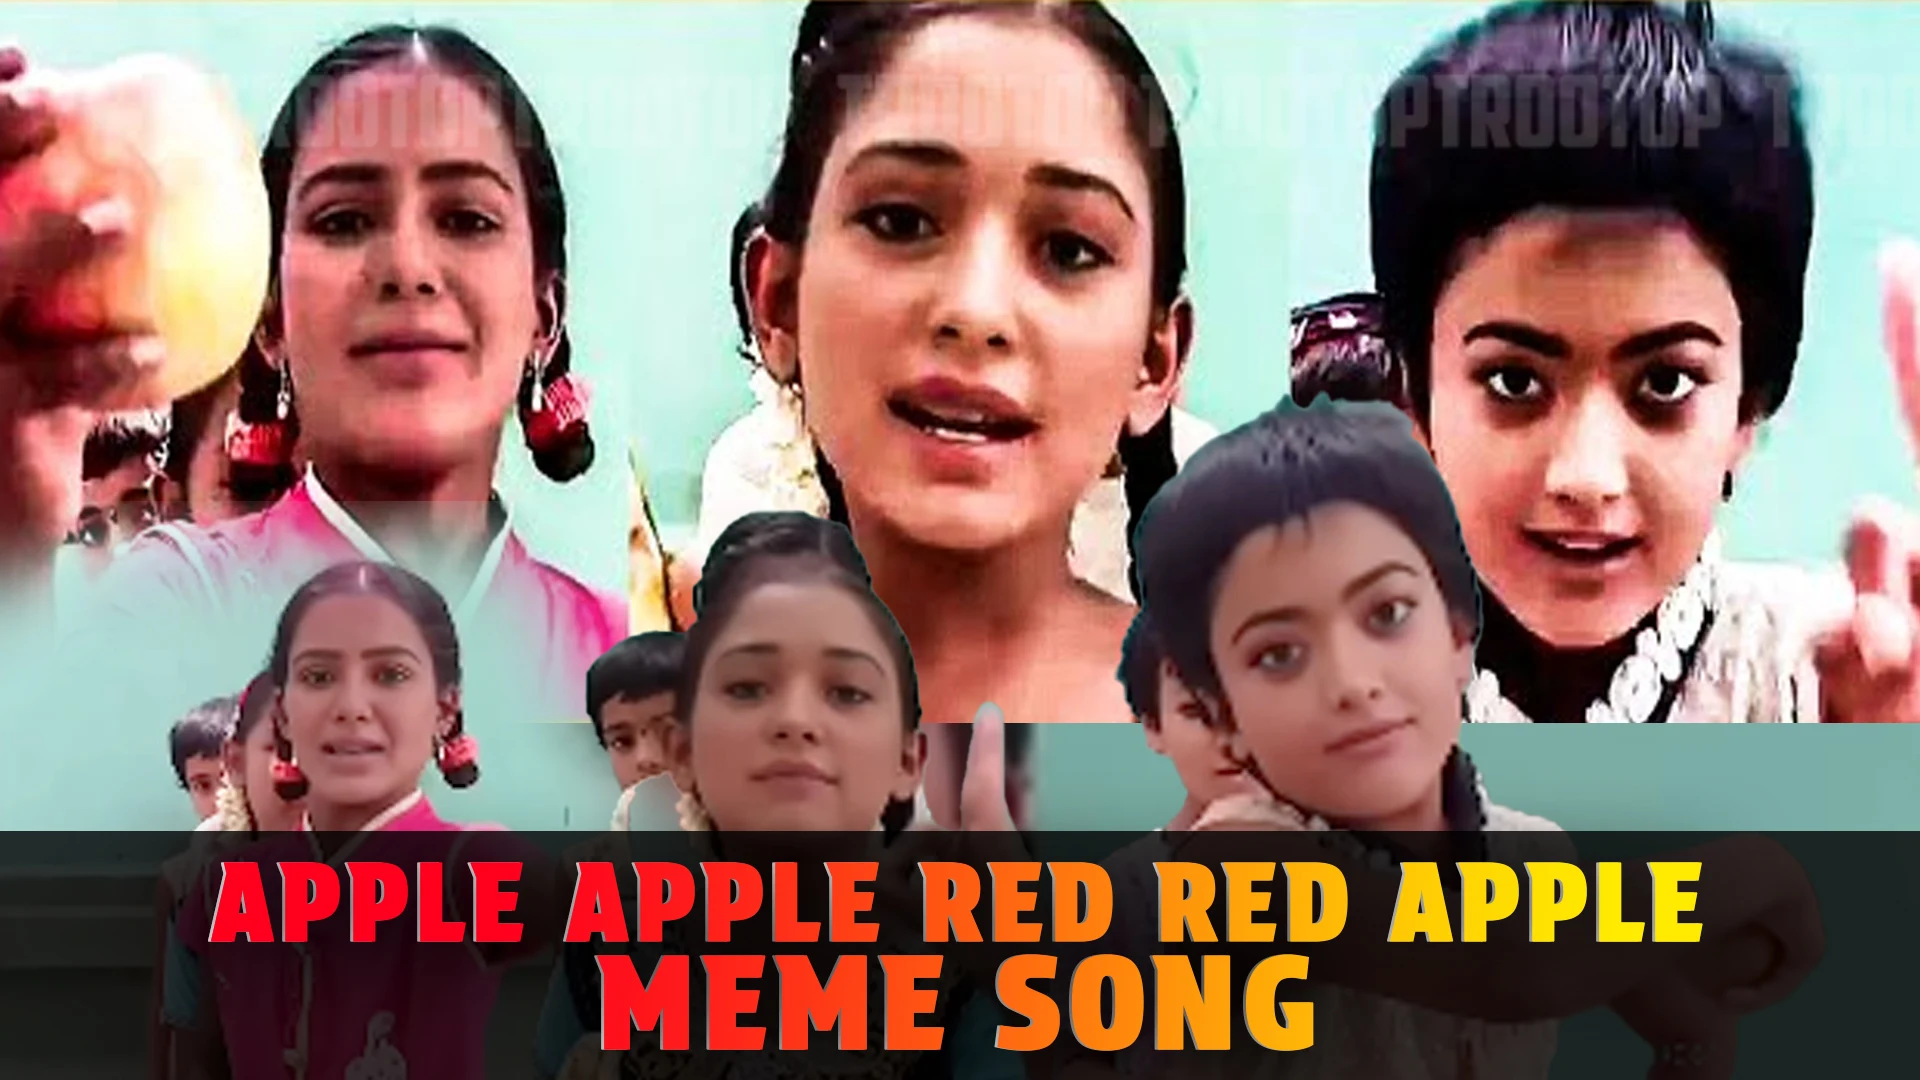 Apple apple red red apple meme song